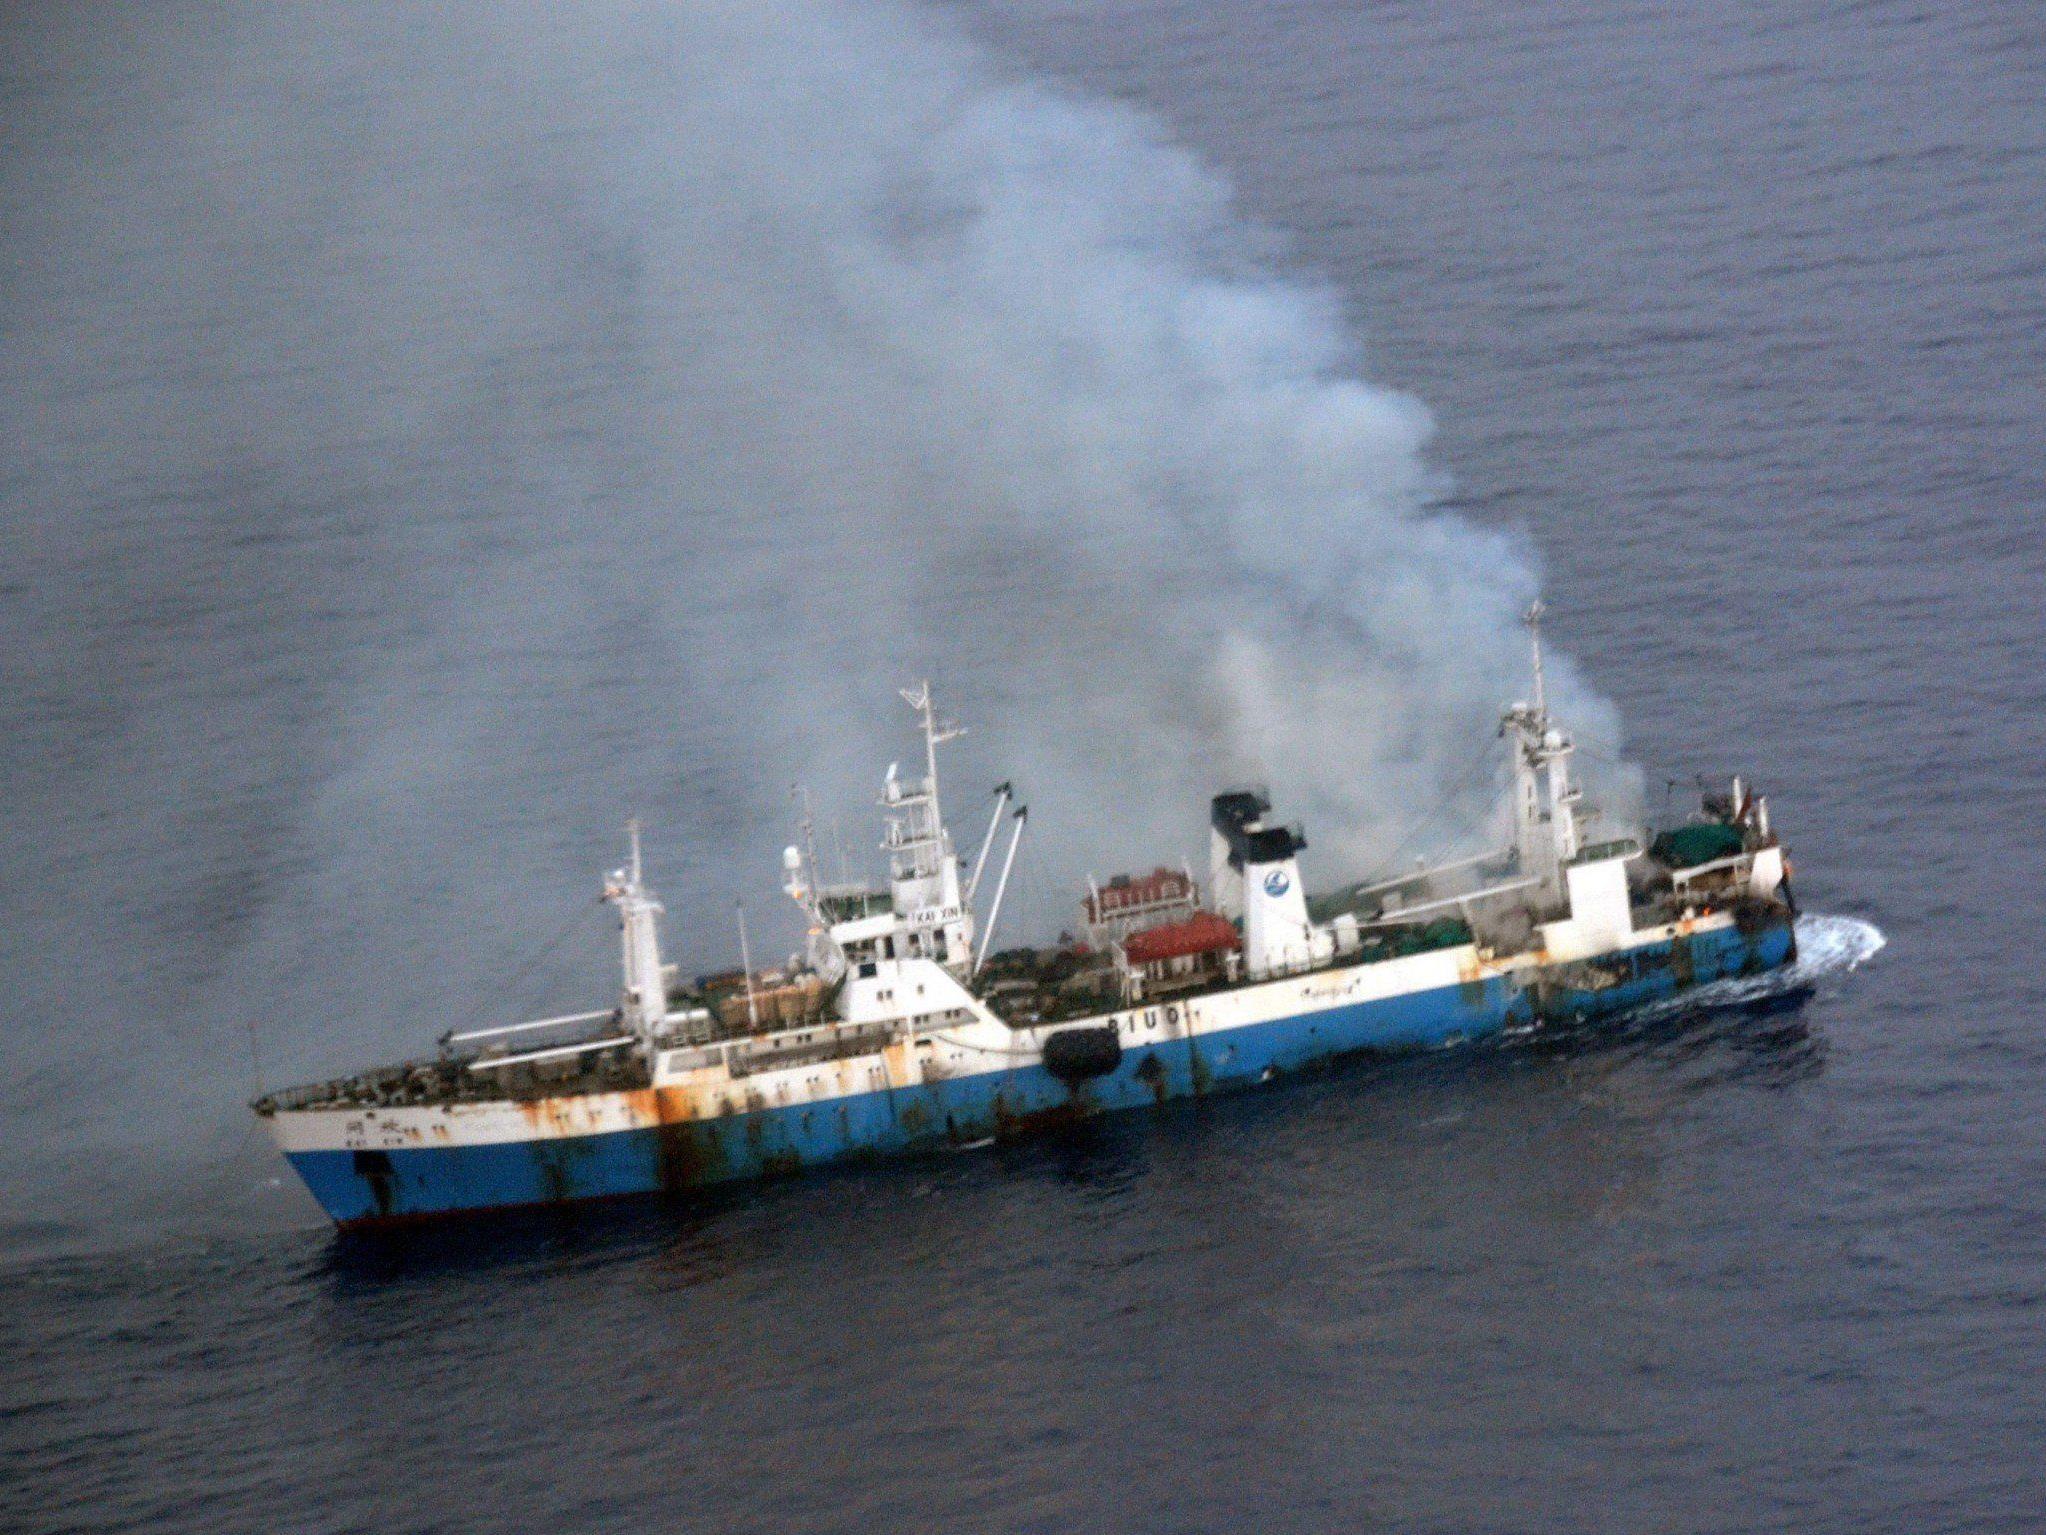 Besatzungsmitglieder von norwegischem Schiff gerettet.